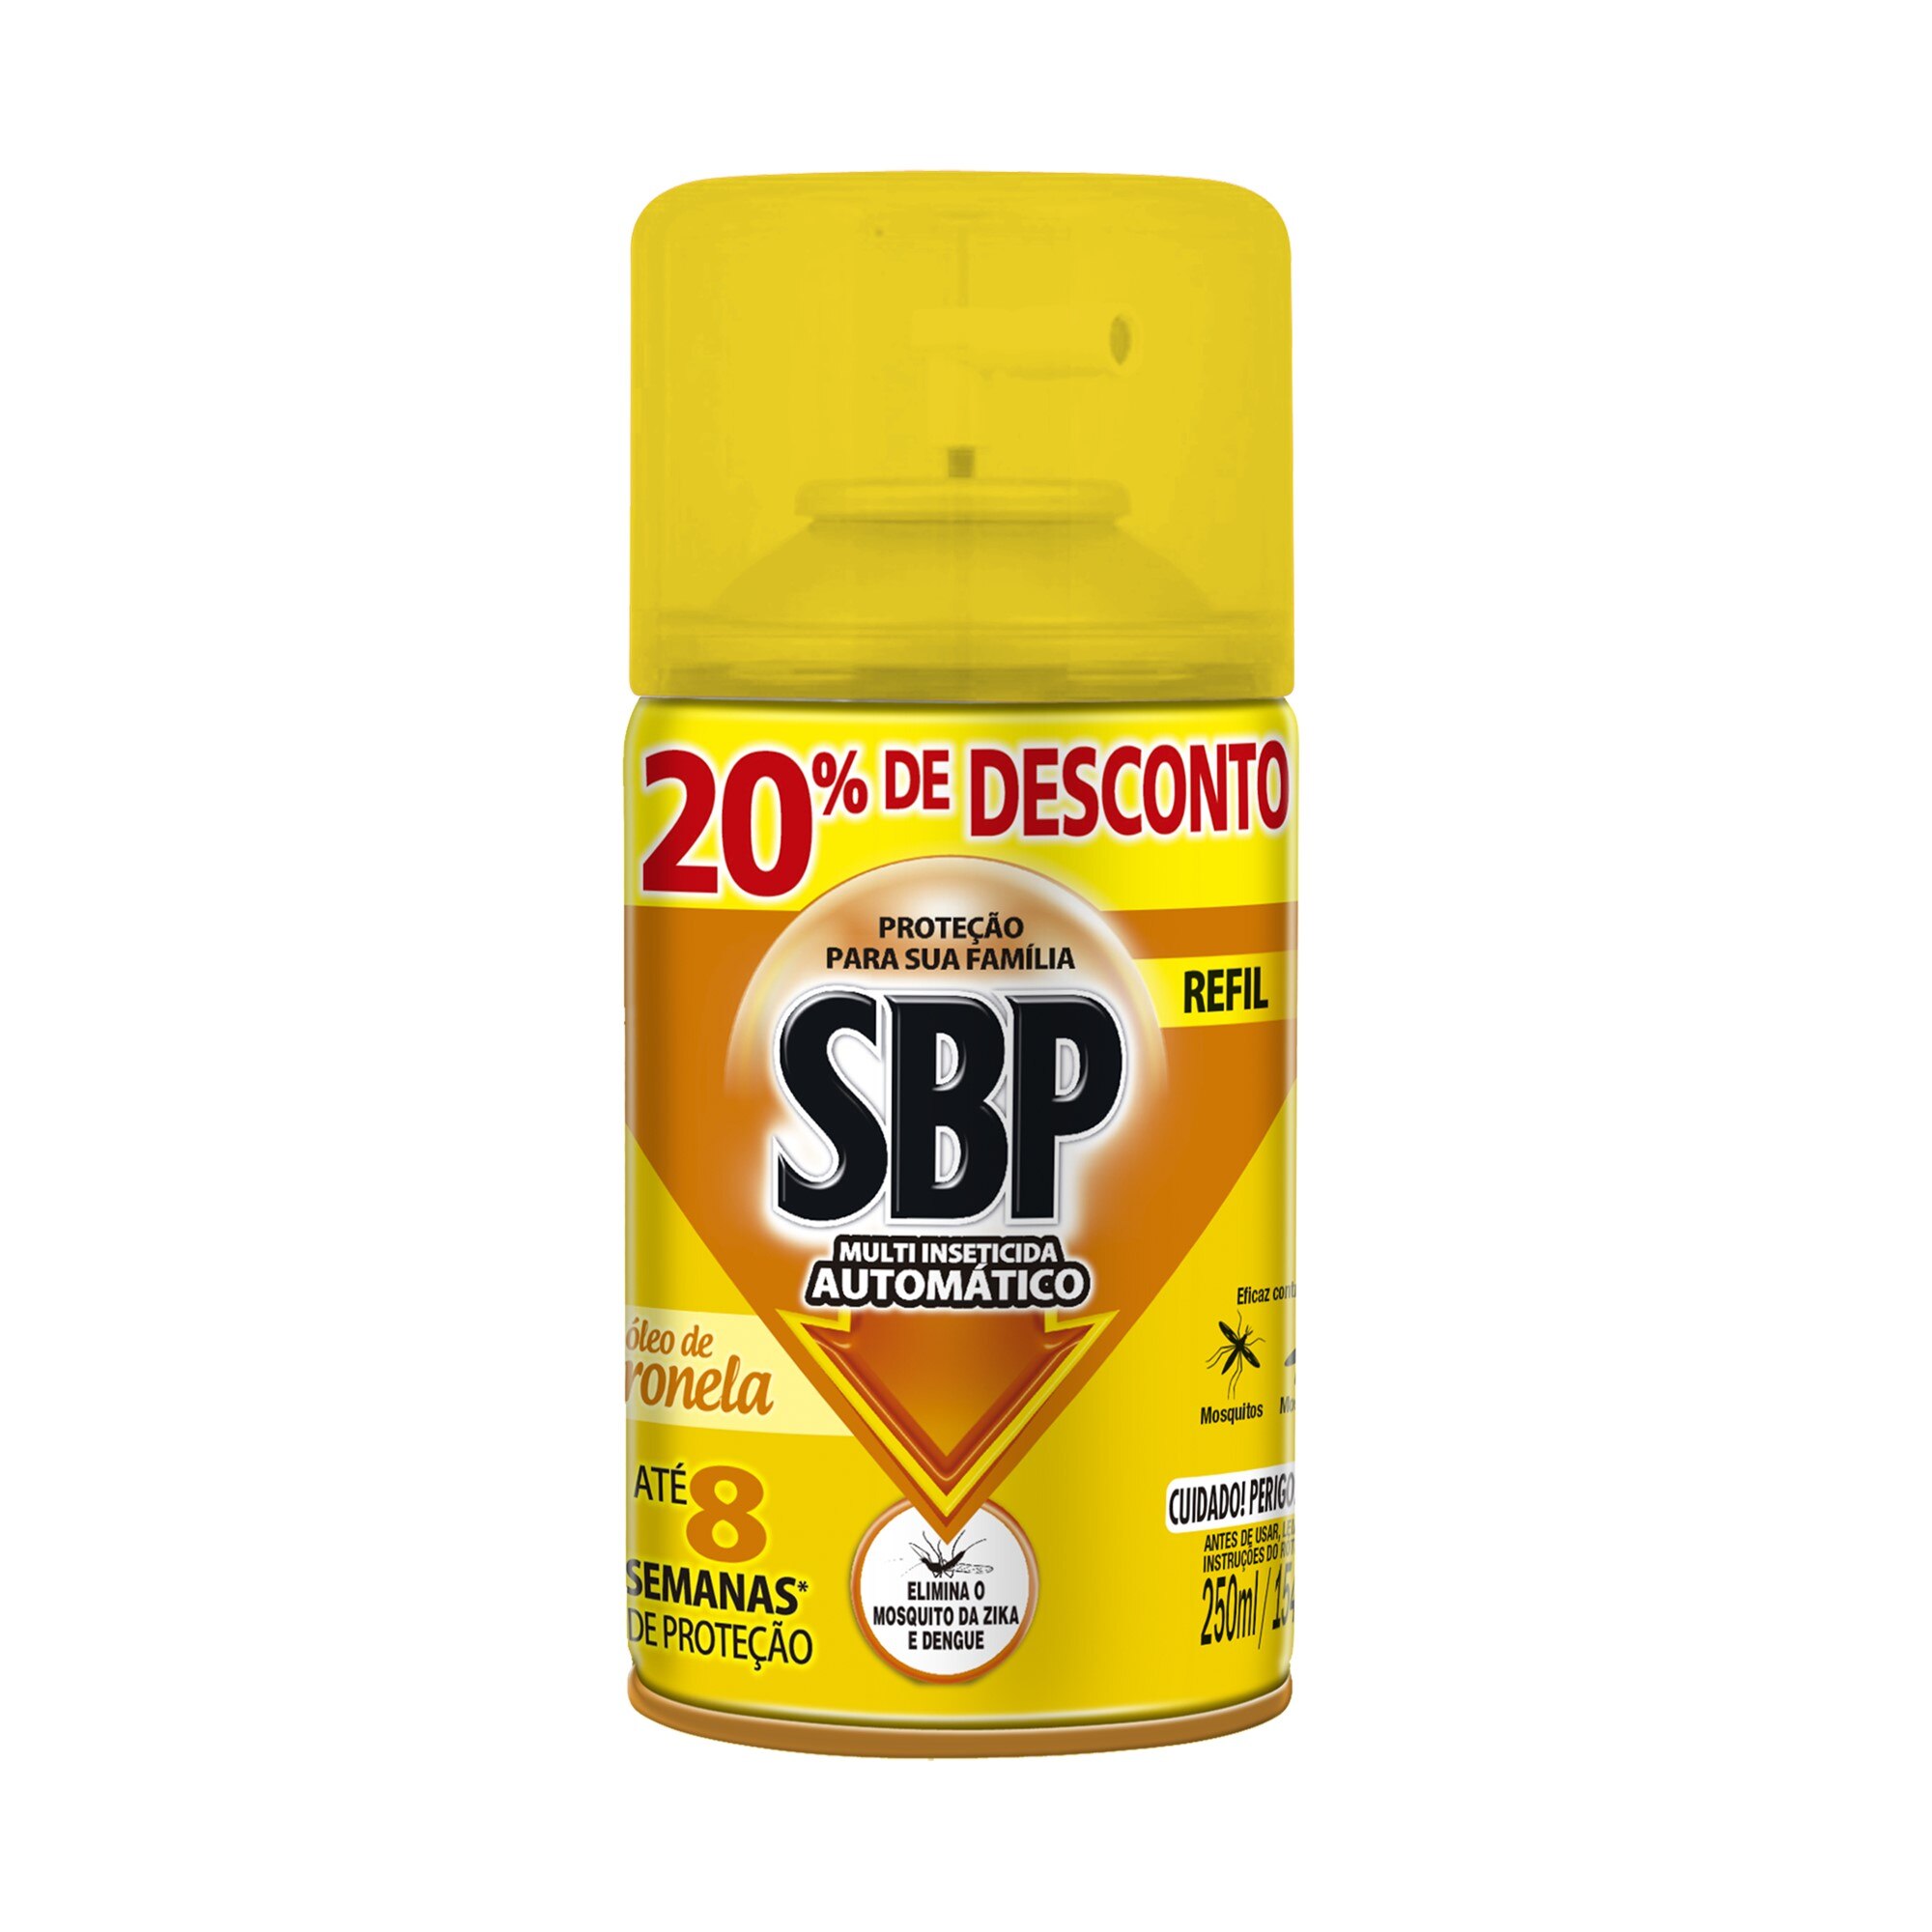 Refil Multi-Inseticida SBP Aparelho Automático 20% Desconto 250ml